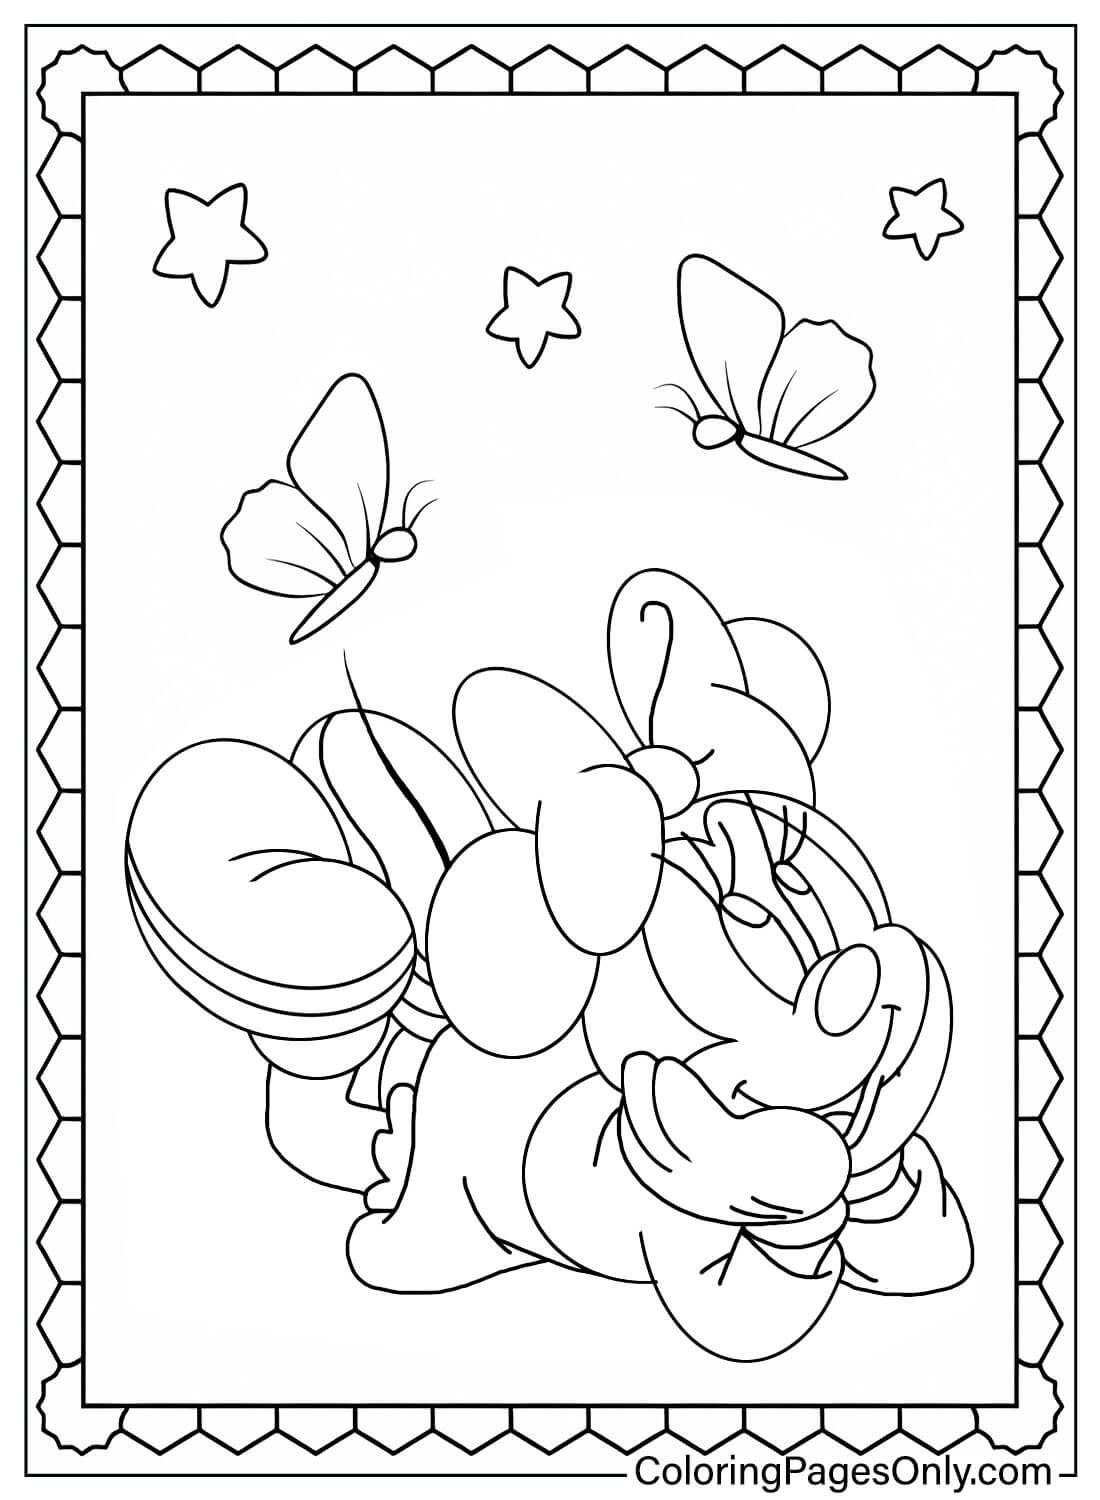 Adorabile pagina da colorare di Minnie Mouse da Minnie Mouse